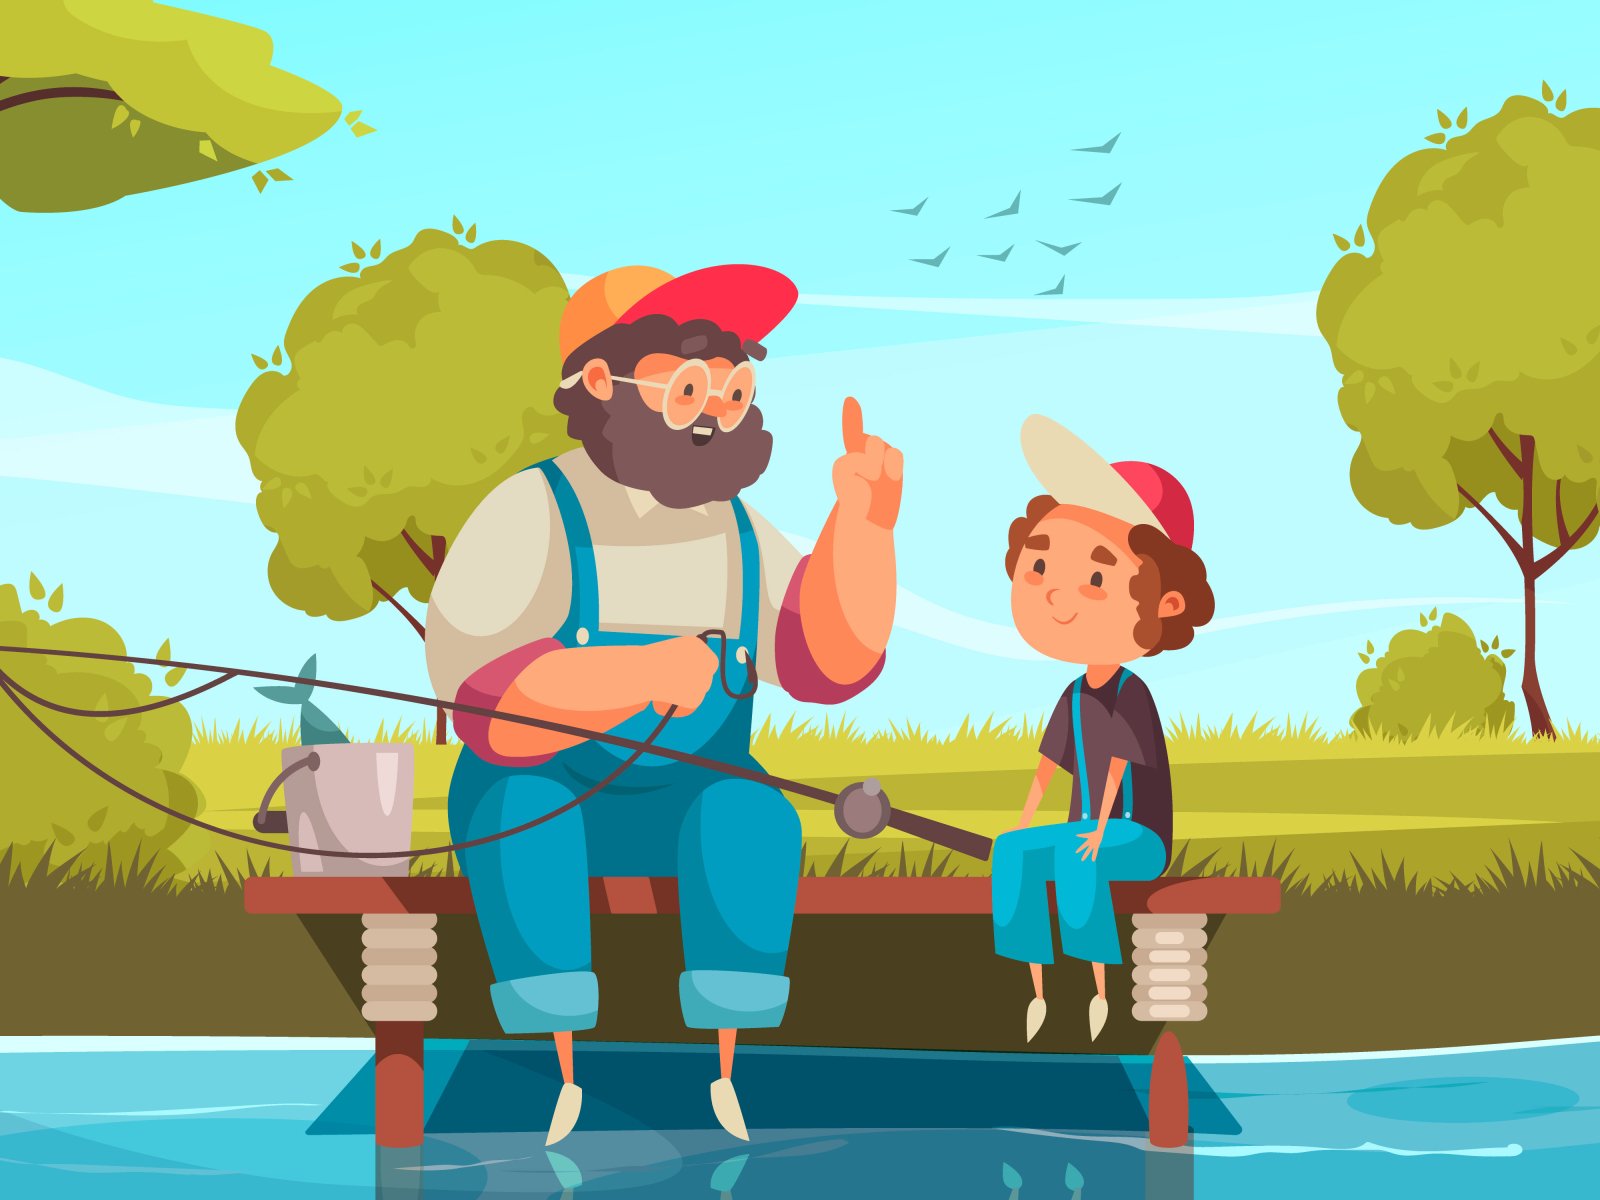 Дедушка ловит рыбу. Дедушка на рыбалке. Дед с внуком на рыбалке. Ltleirfcdyerjvyfhs,fkrt. Дедушка рыбачит с внуком.